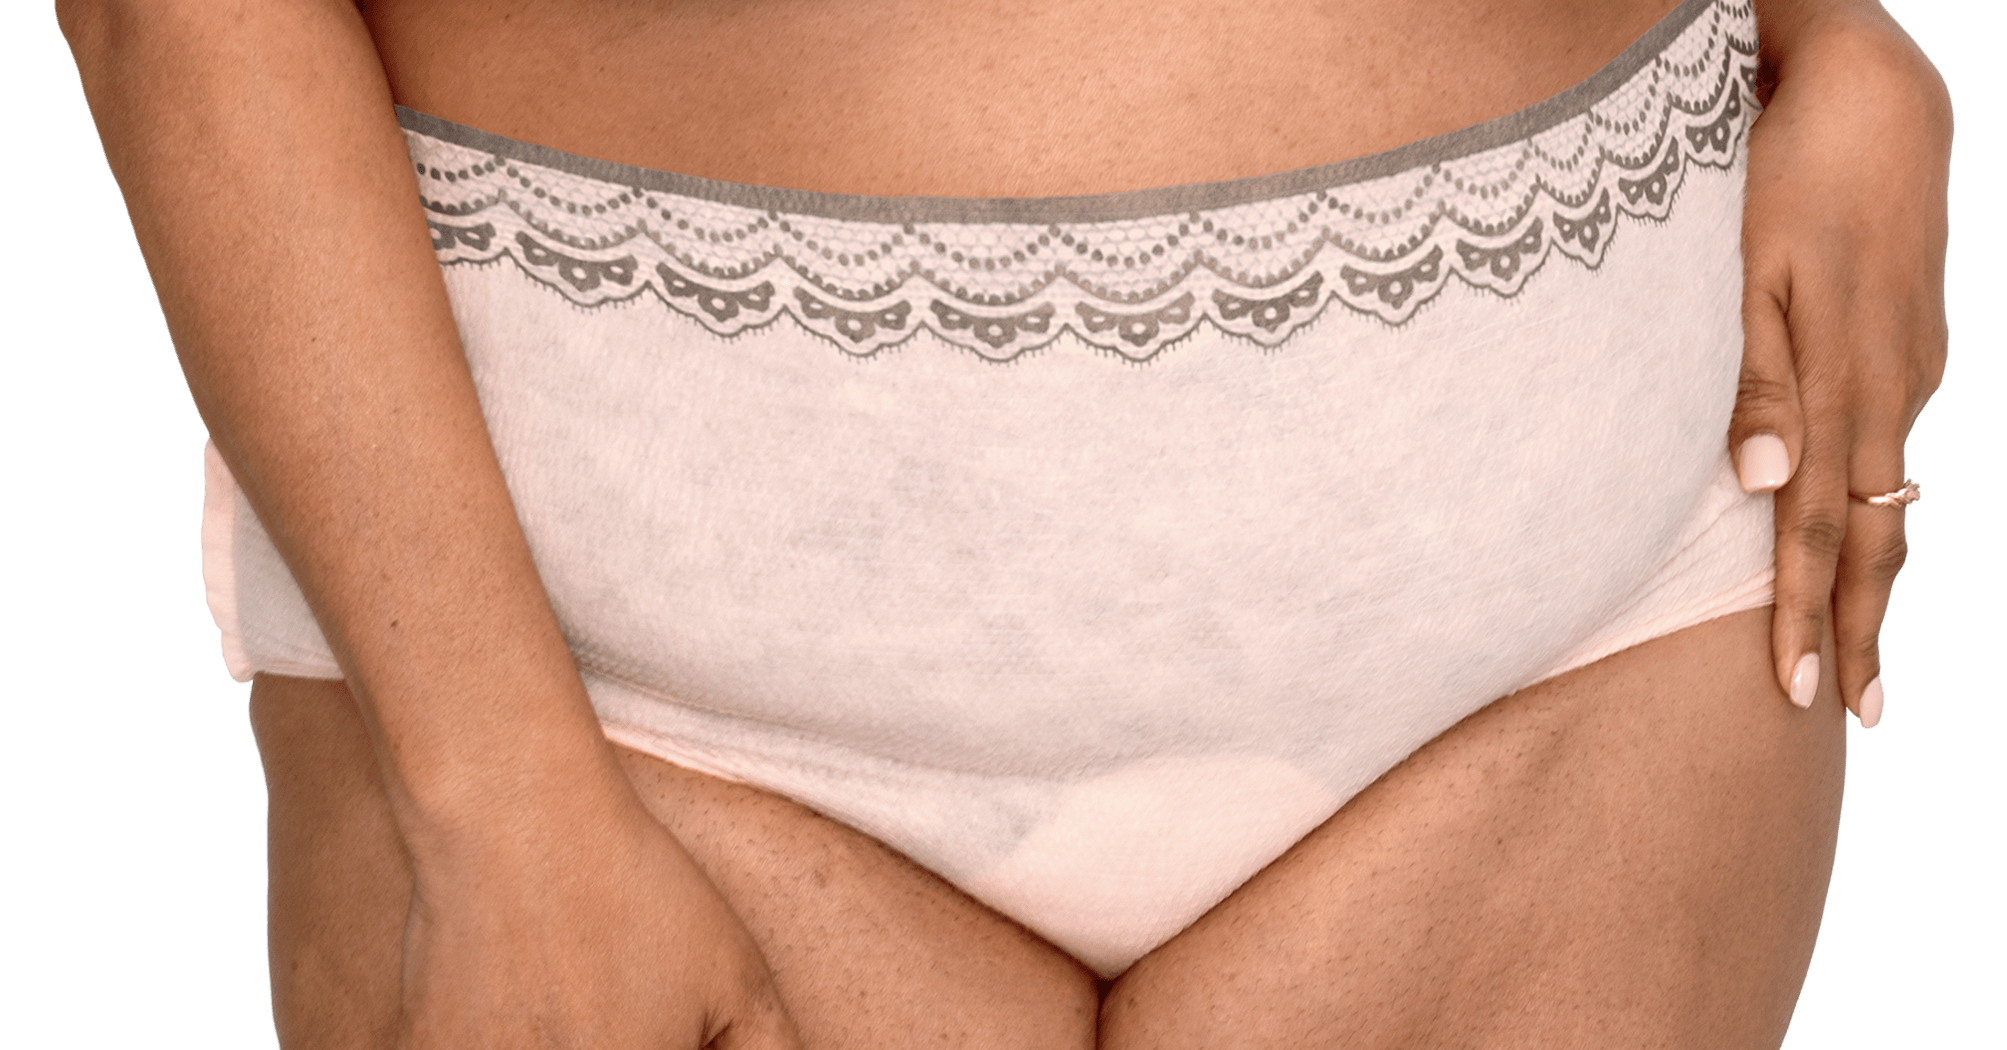 Always Discreet Boutique Incontinence & Postpartum Underwear for